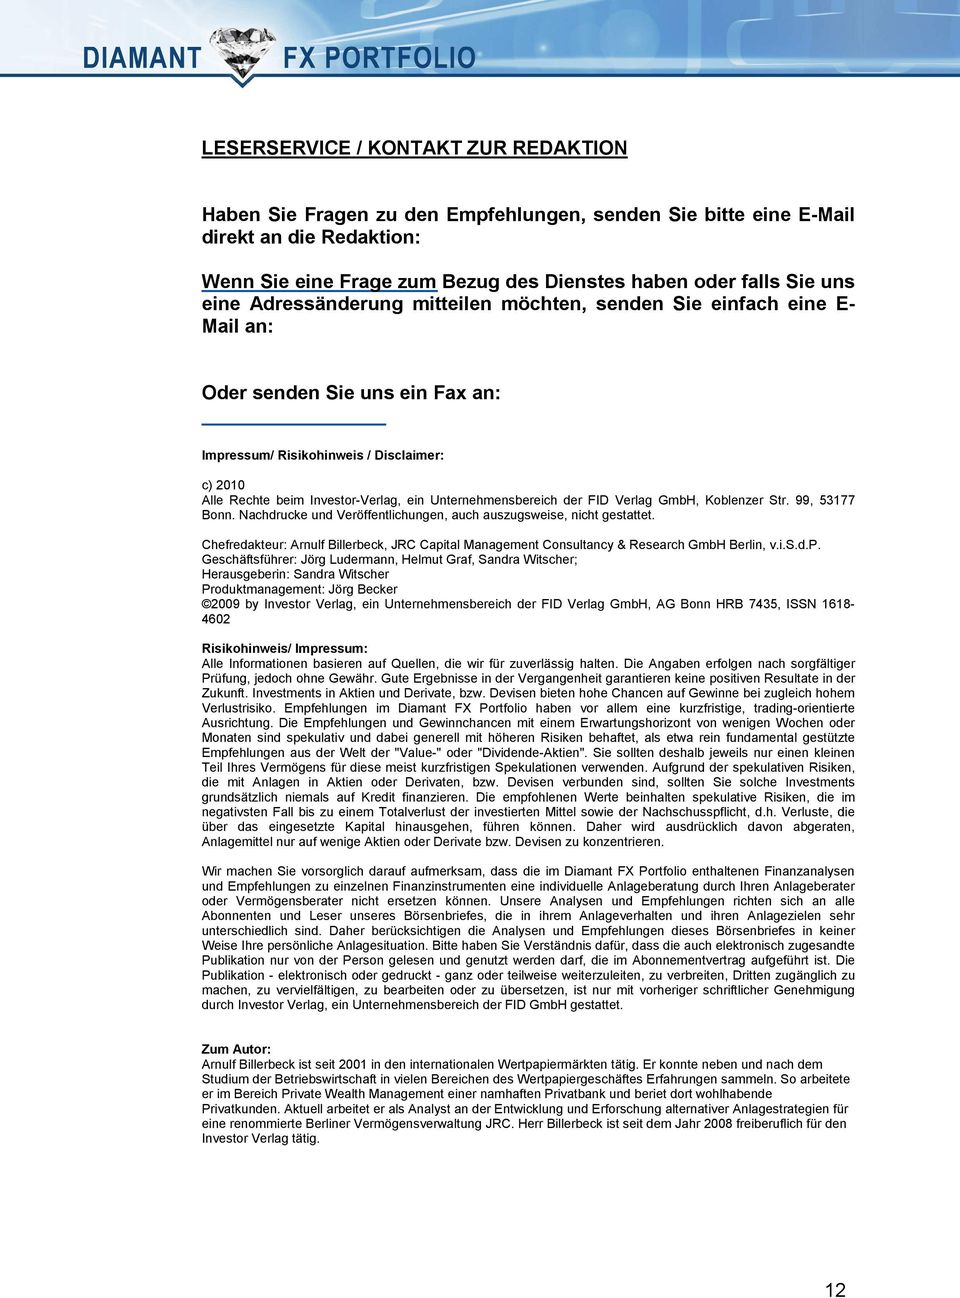 Unternehmensbereich der FID Verlag GmbH, Koblenzer Str. 99, 53177 Bonn. Nachdrucke und Veröffentlichungen, auch auszugsweise, nicht gestattet.